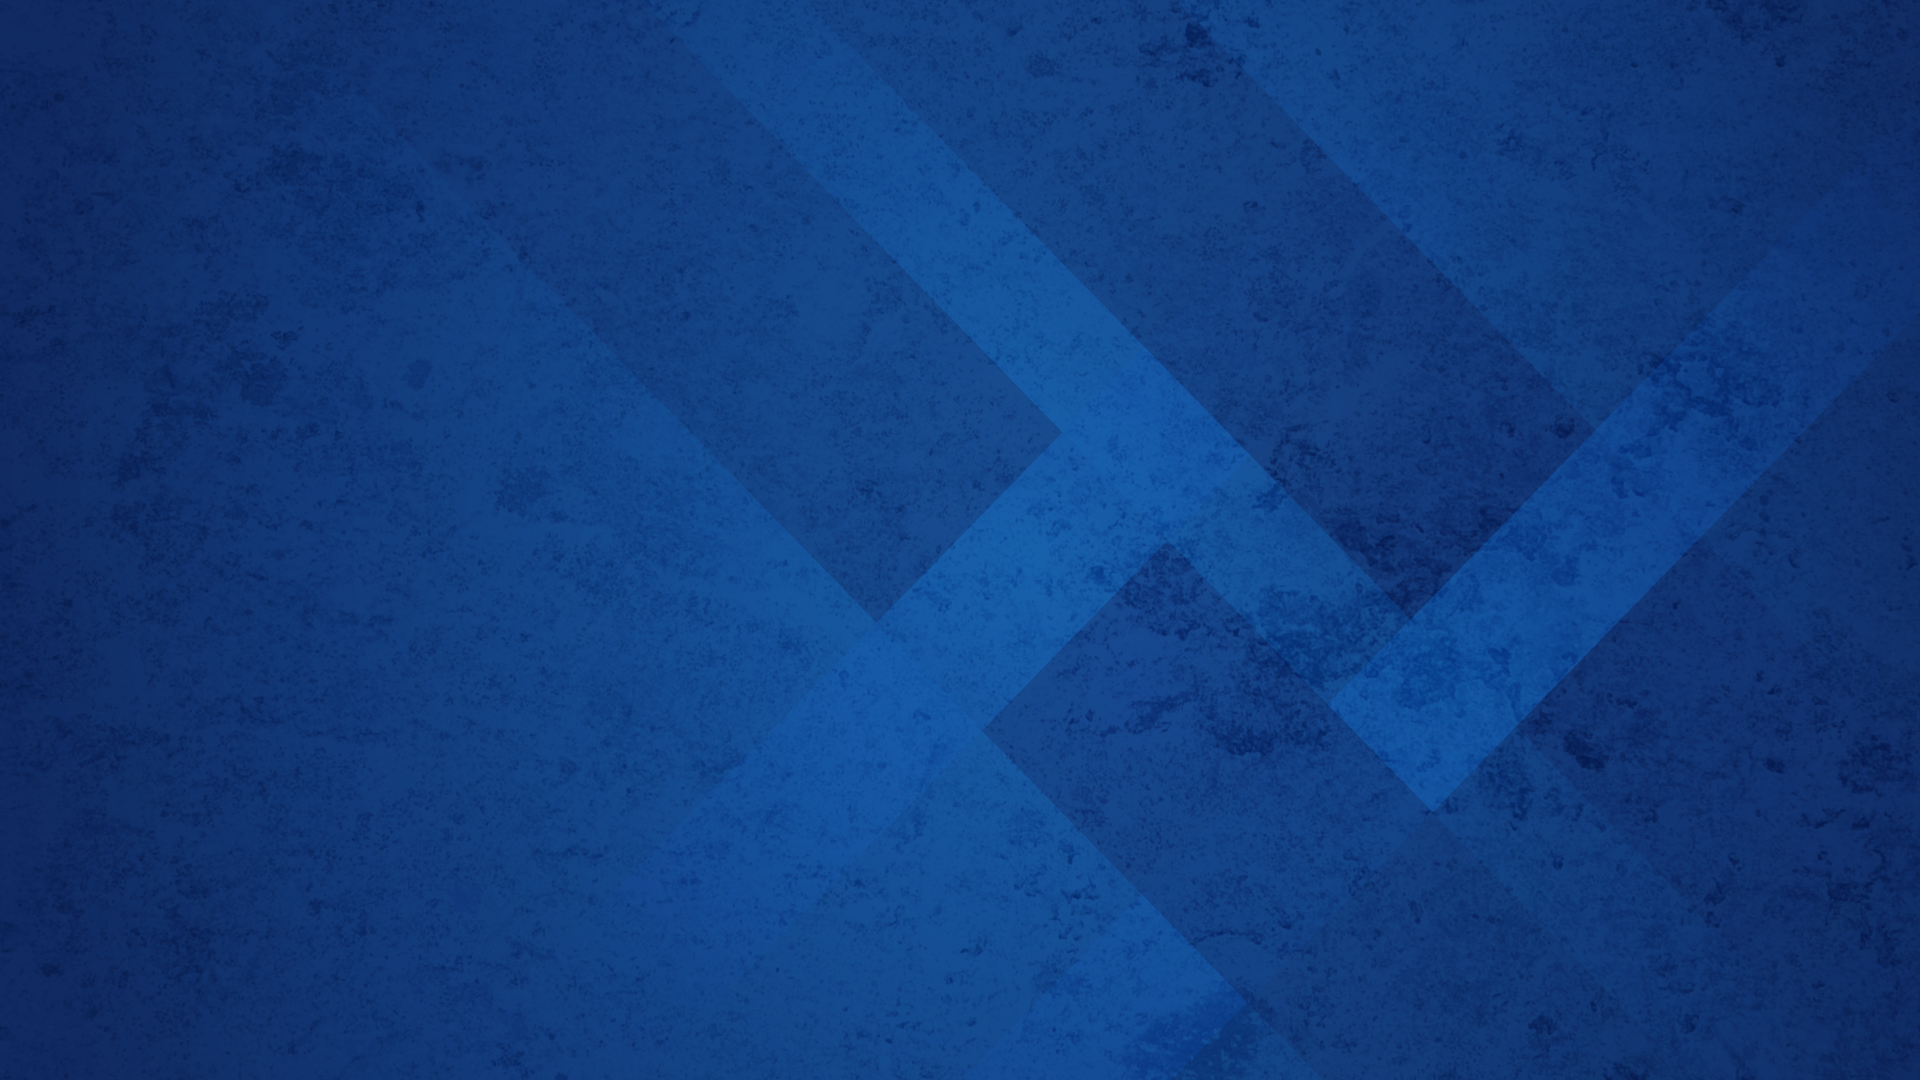 Principles of internet marketing hintergrundbilder blau texturen hintergrund